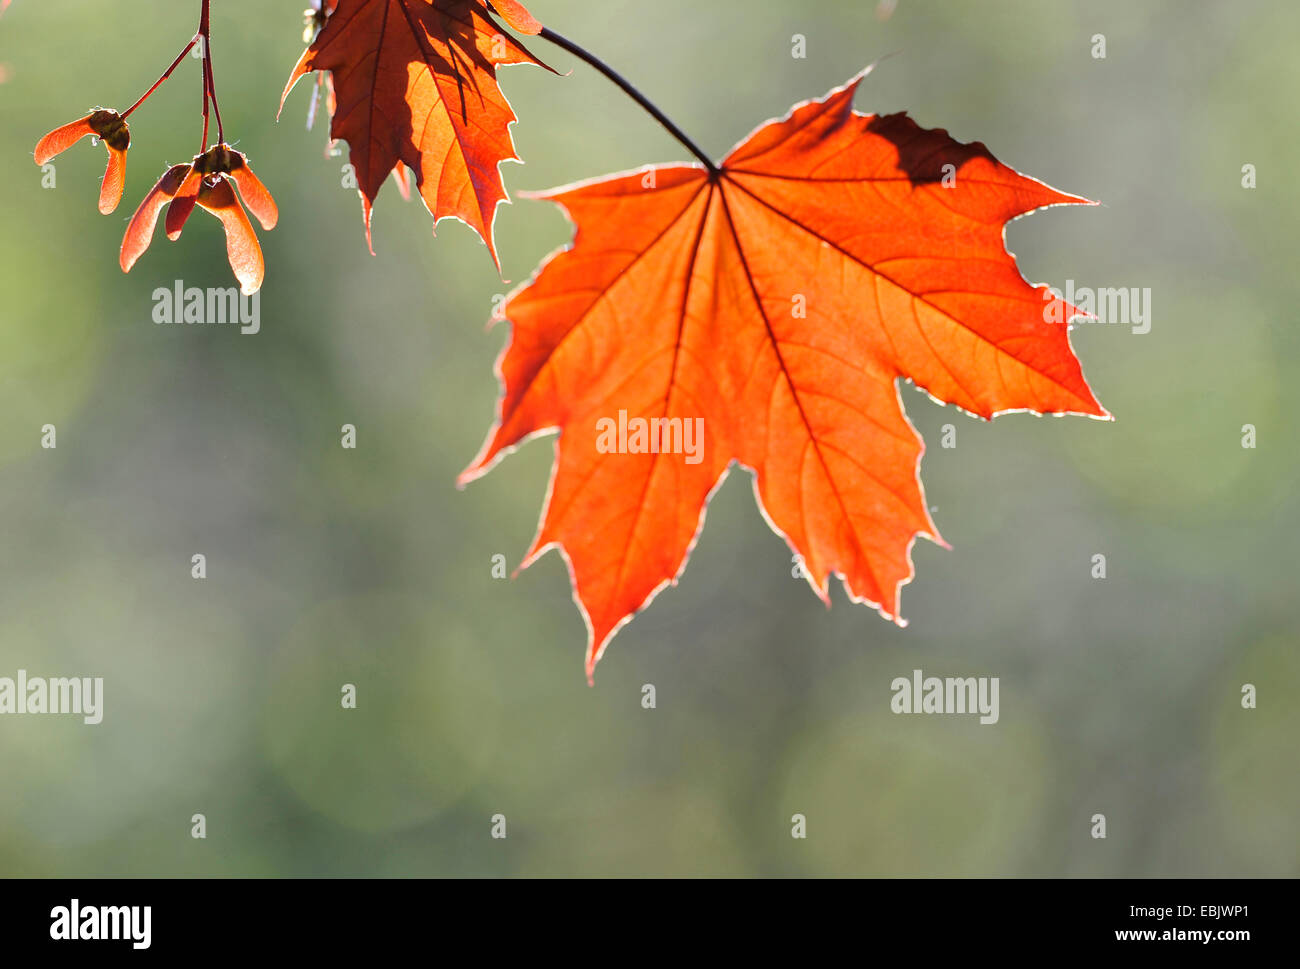 Spitz-Ahorn (Acer Platanoides), Herbst Blätter und Früchte bei Gegenlicht, Frankreich Stockfoto